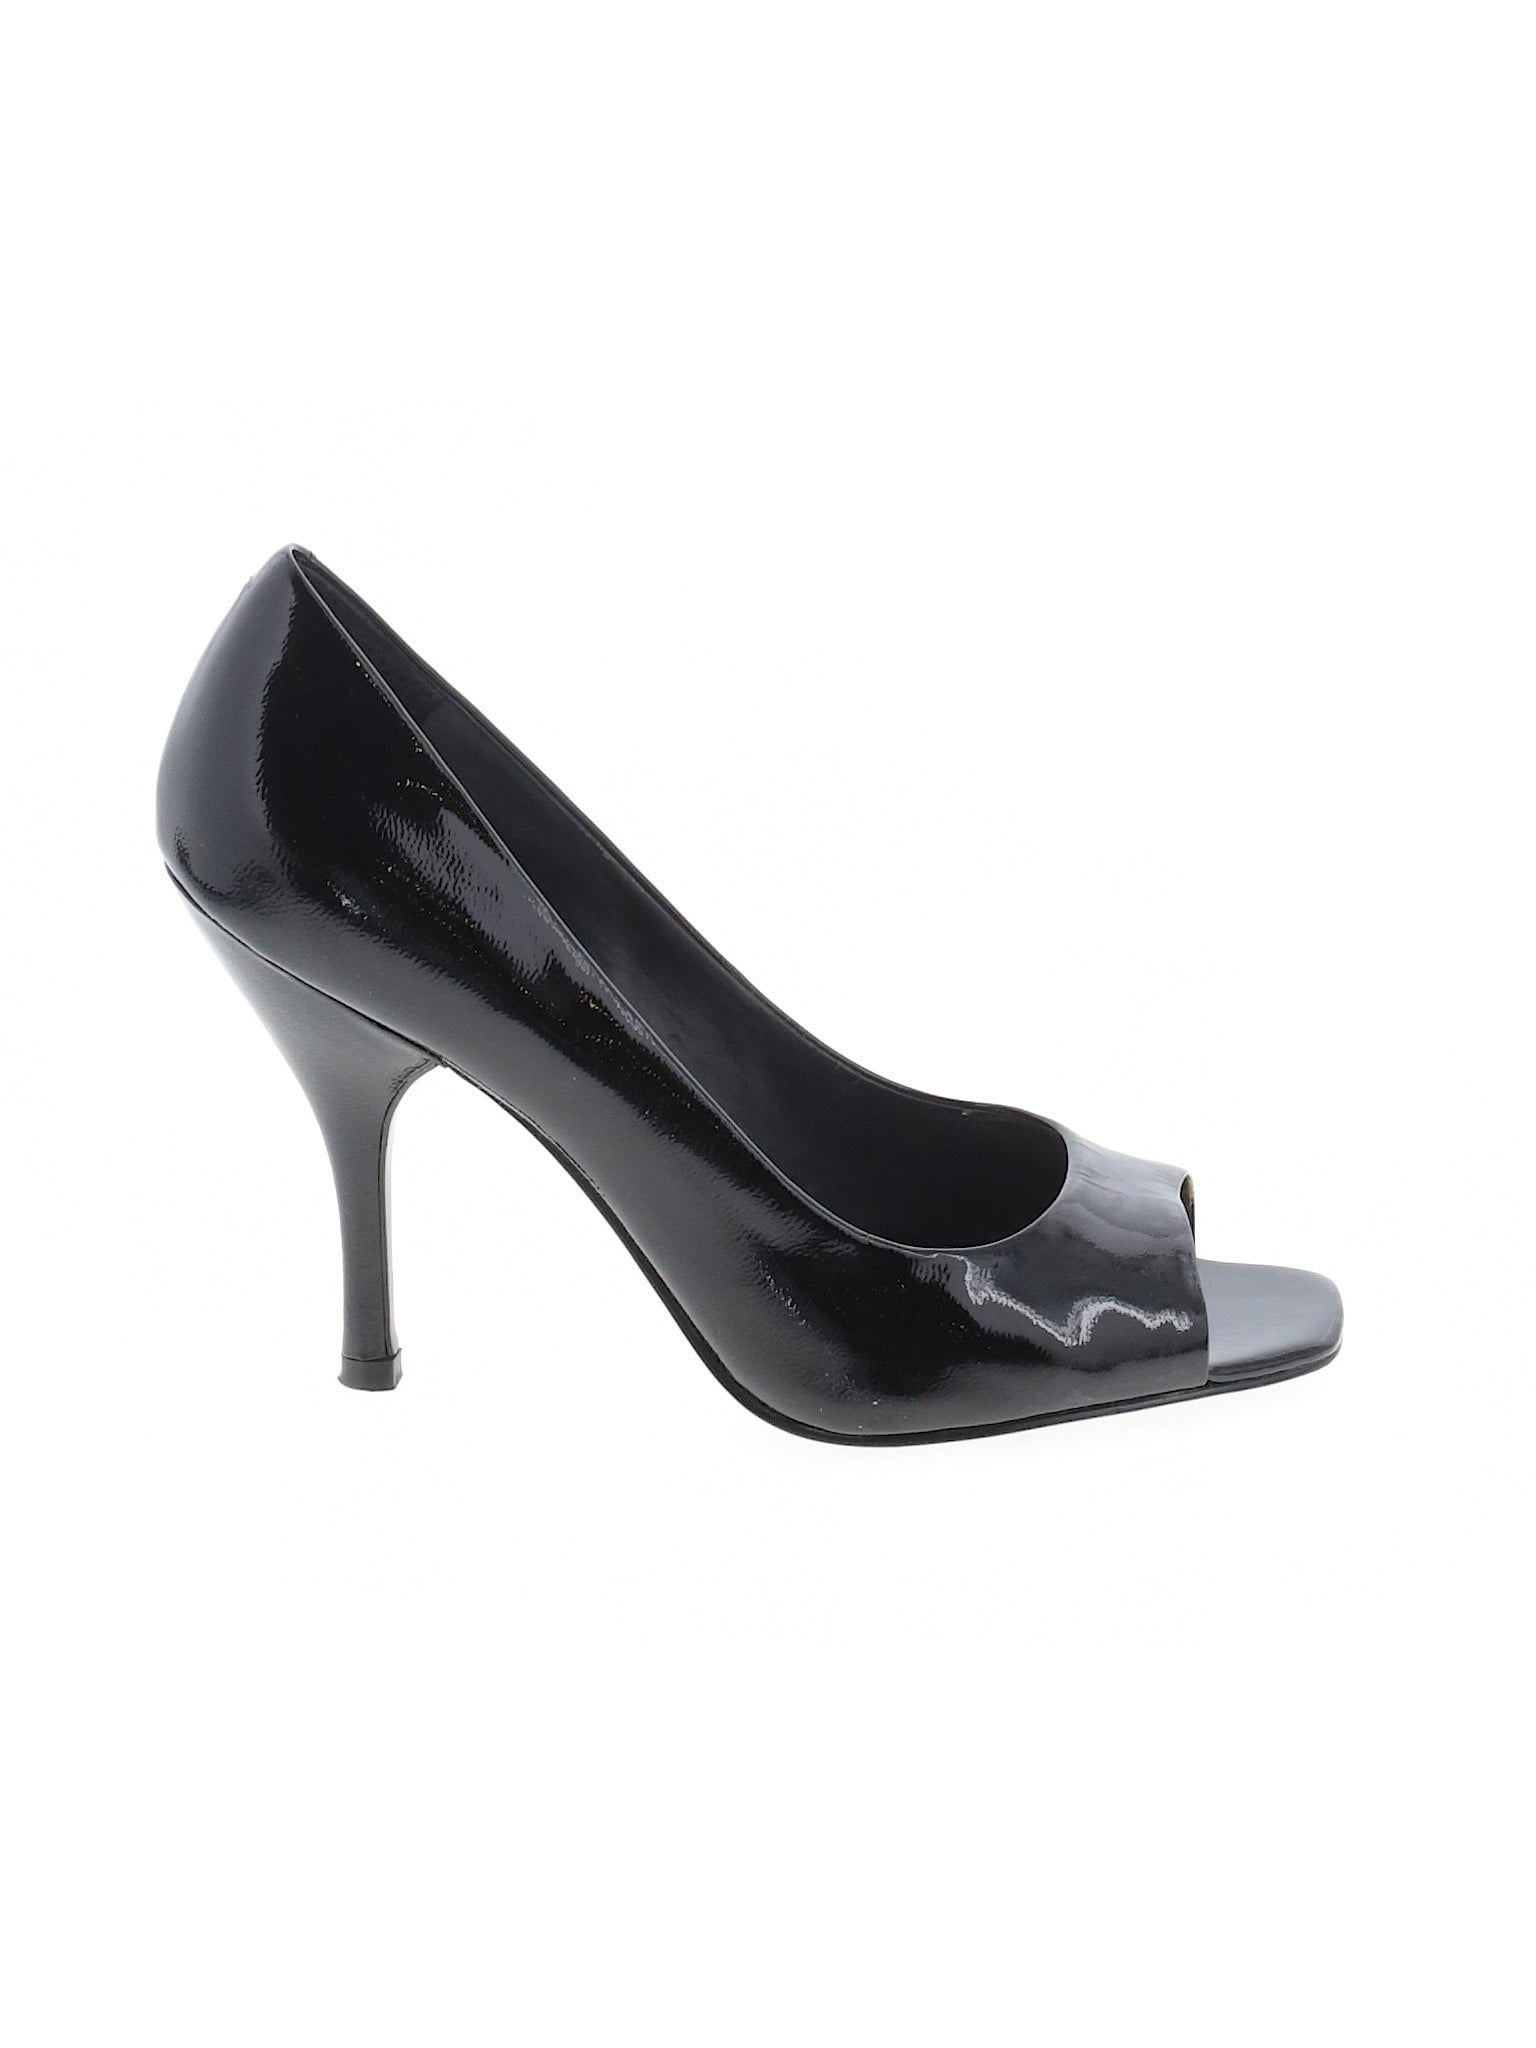 cheap size 9 heels